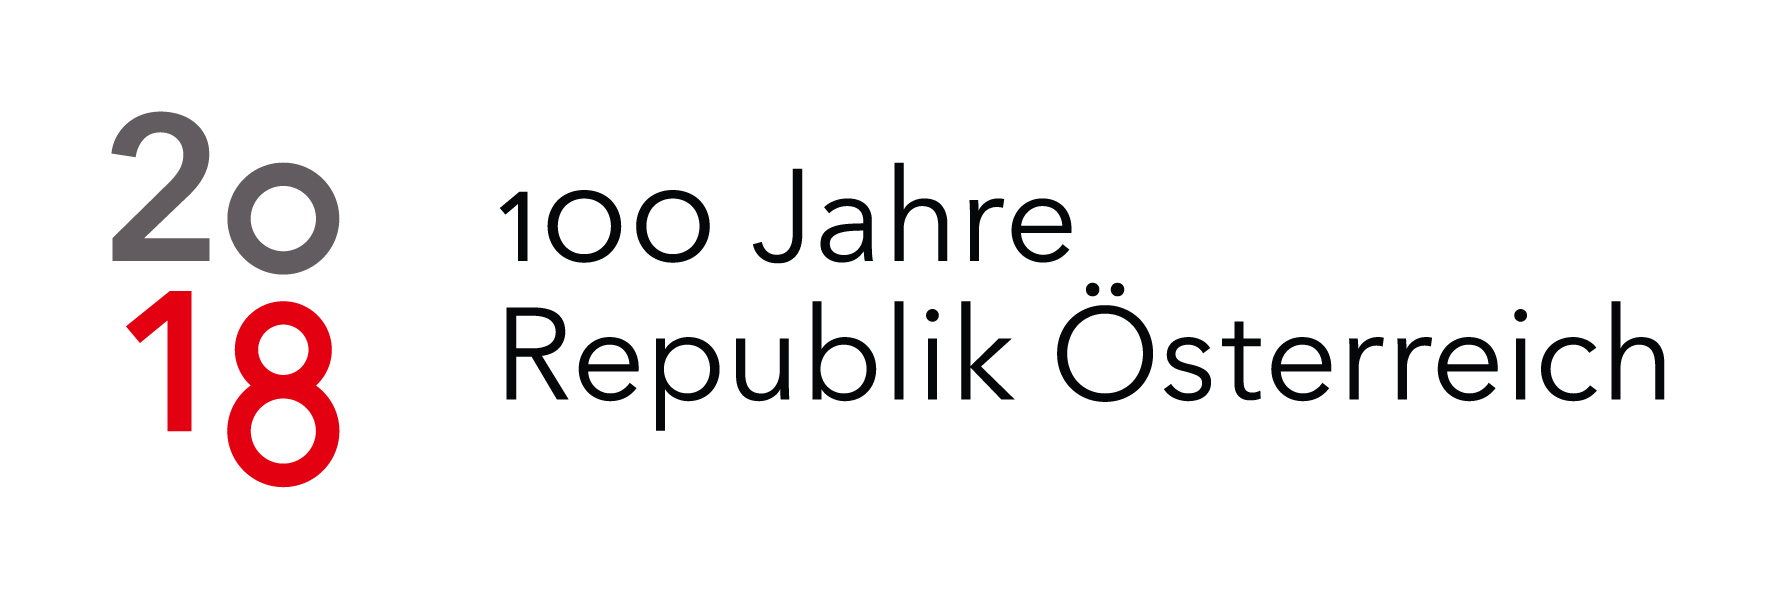 2018 - 100 years of Republic of Austria